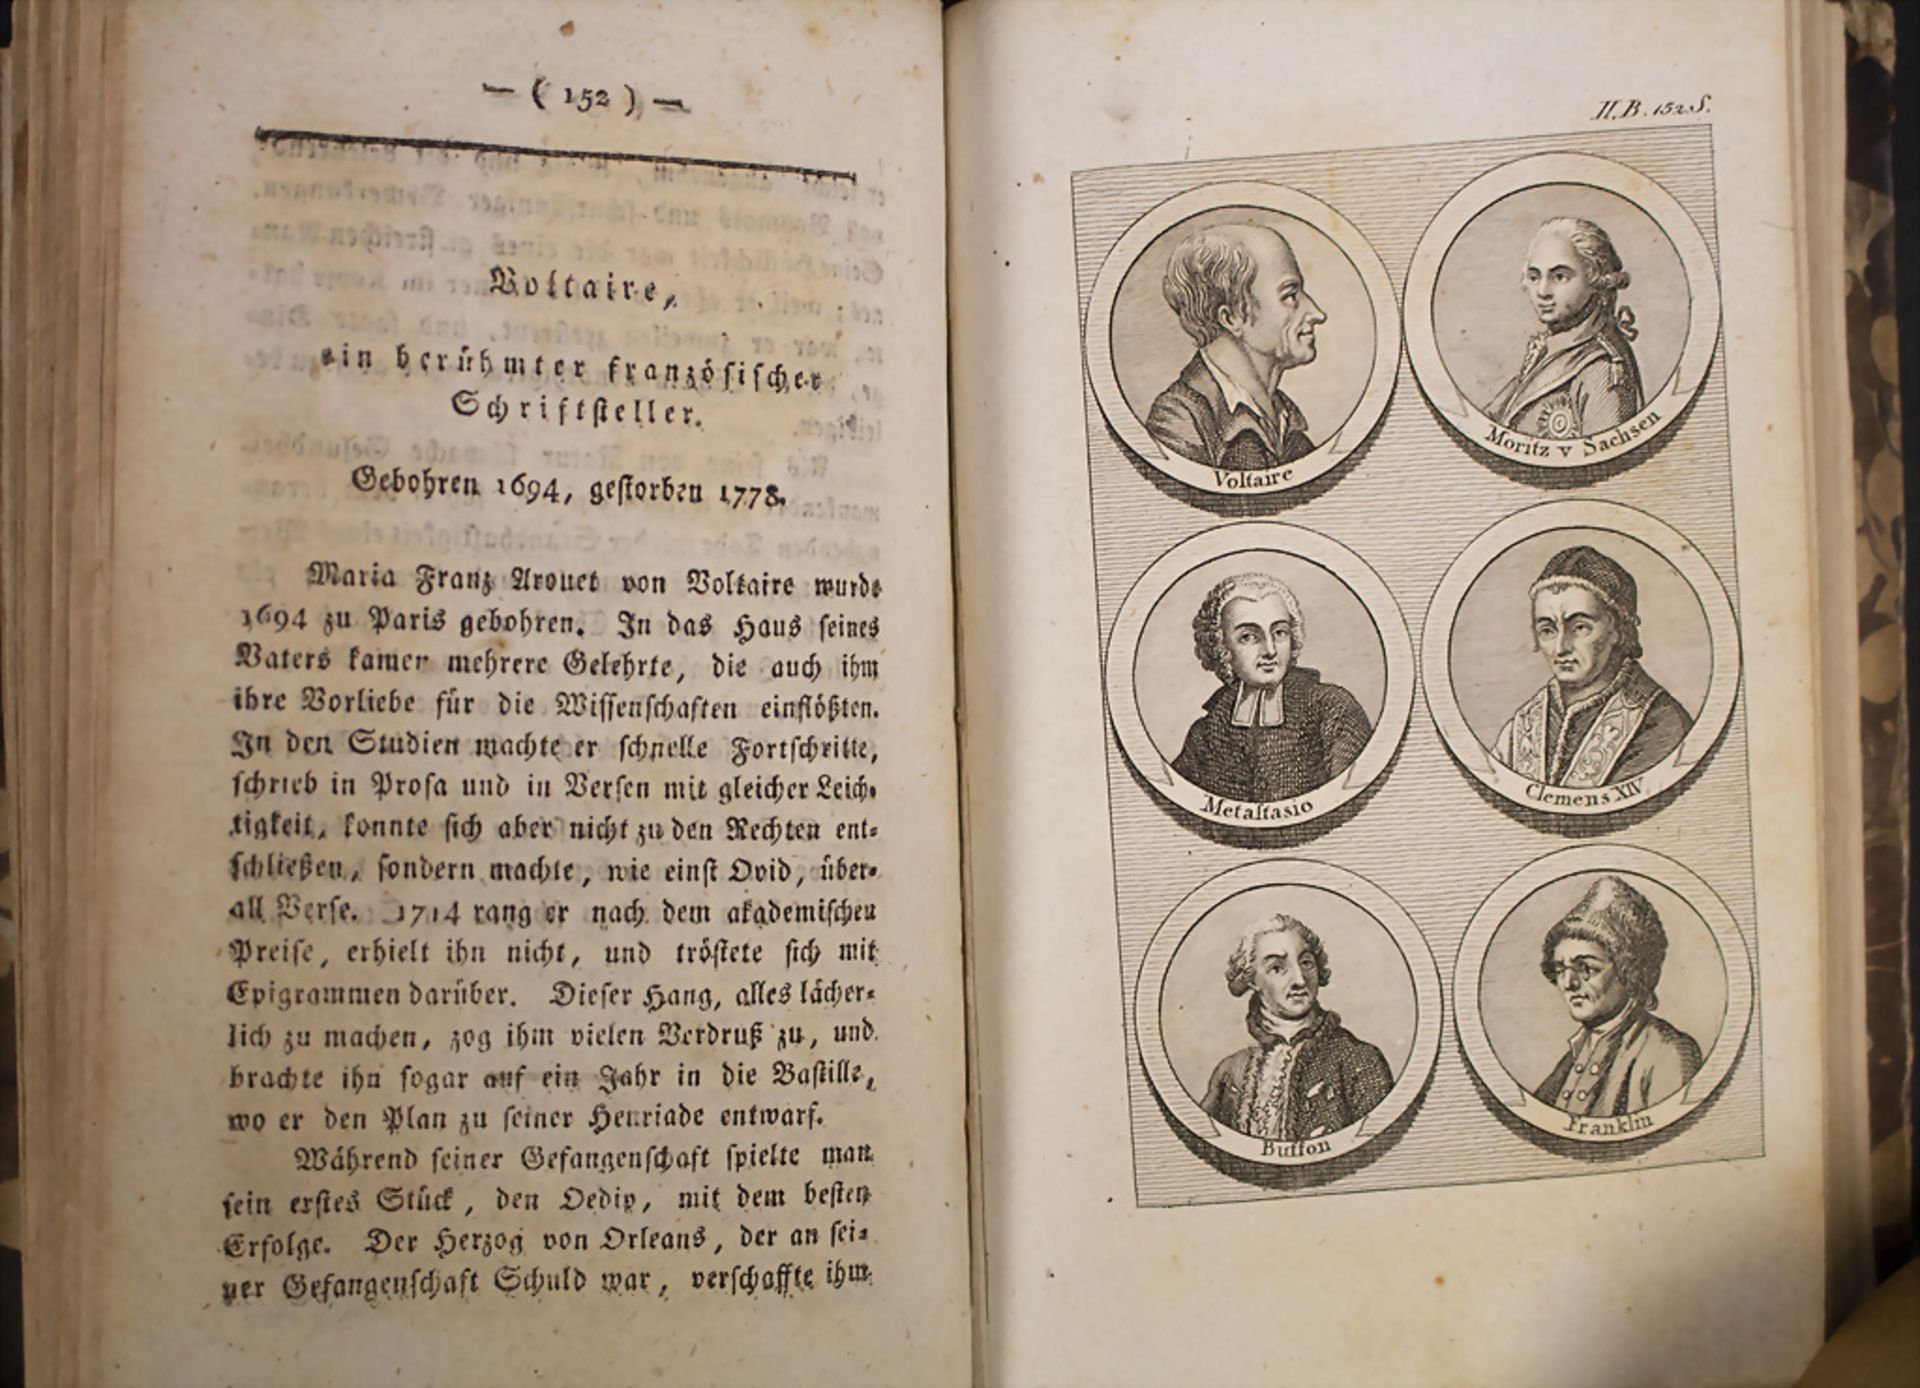 Peter Blanchard (Hrsg.): 'Neuer Plutarch' oder kurze Lebensbeschreibungen...', Wien, 1806 - Image 5 of 7